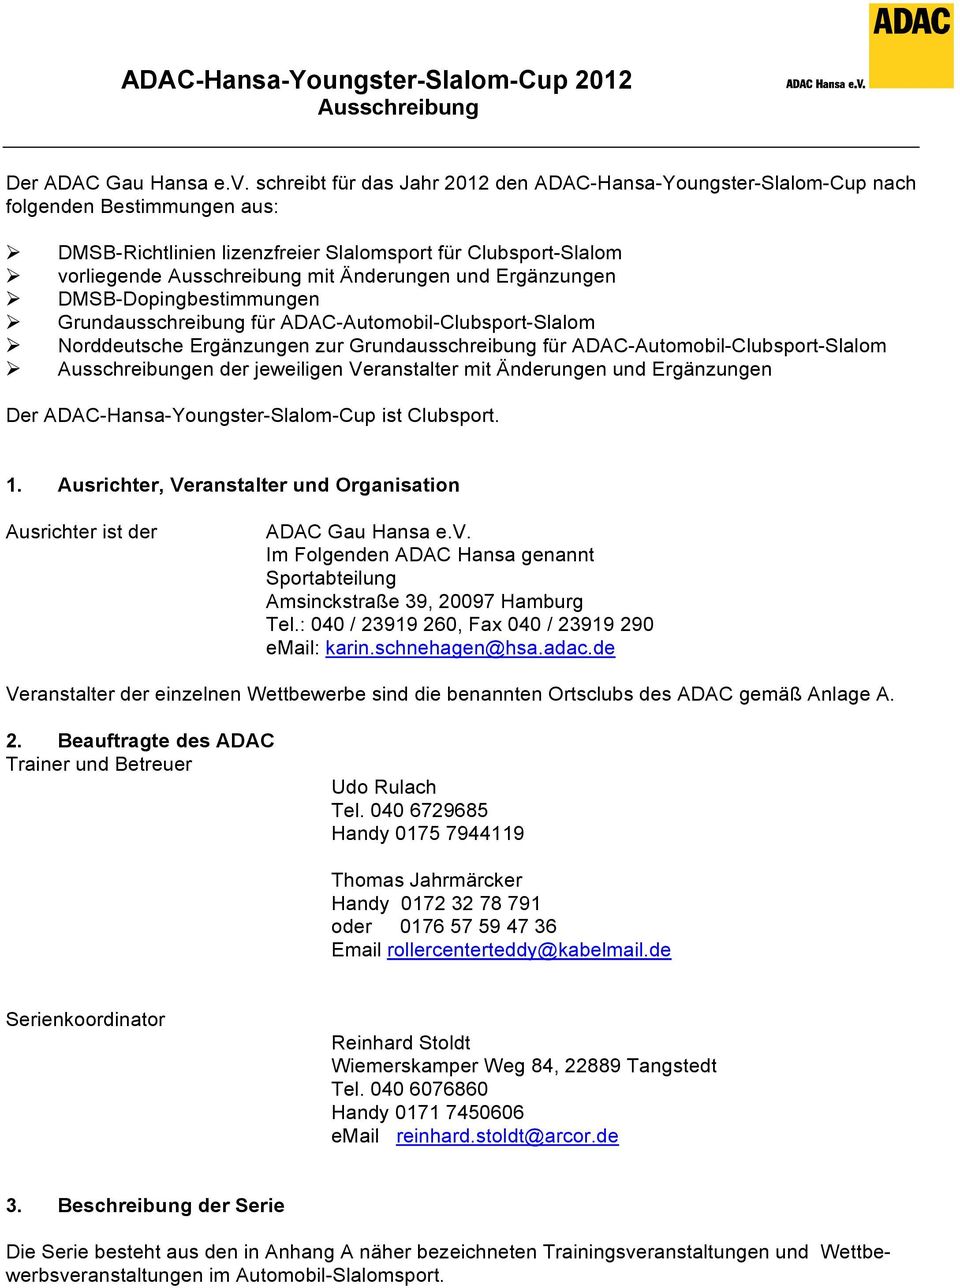 Ergänzungen DMSB-Dopingbestimmungen Grundausschreibung für ADAC Automobil Clubsport Slalom Norddeutsche Ergänzungen zur Grundausschreibung für ADAC Automobil Clubsport Slalom en der jeweiligen